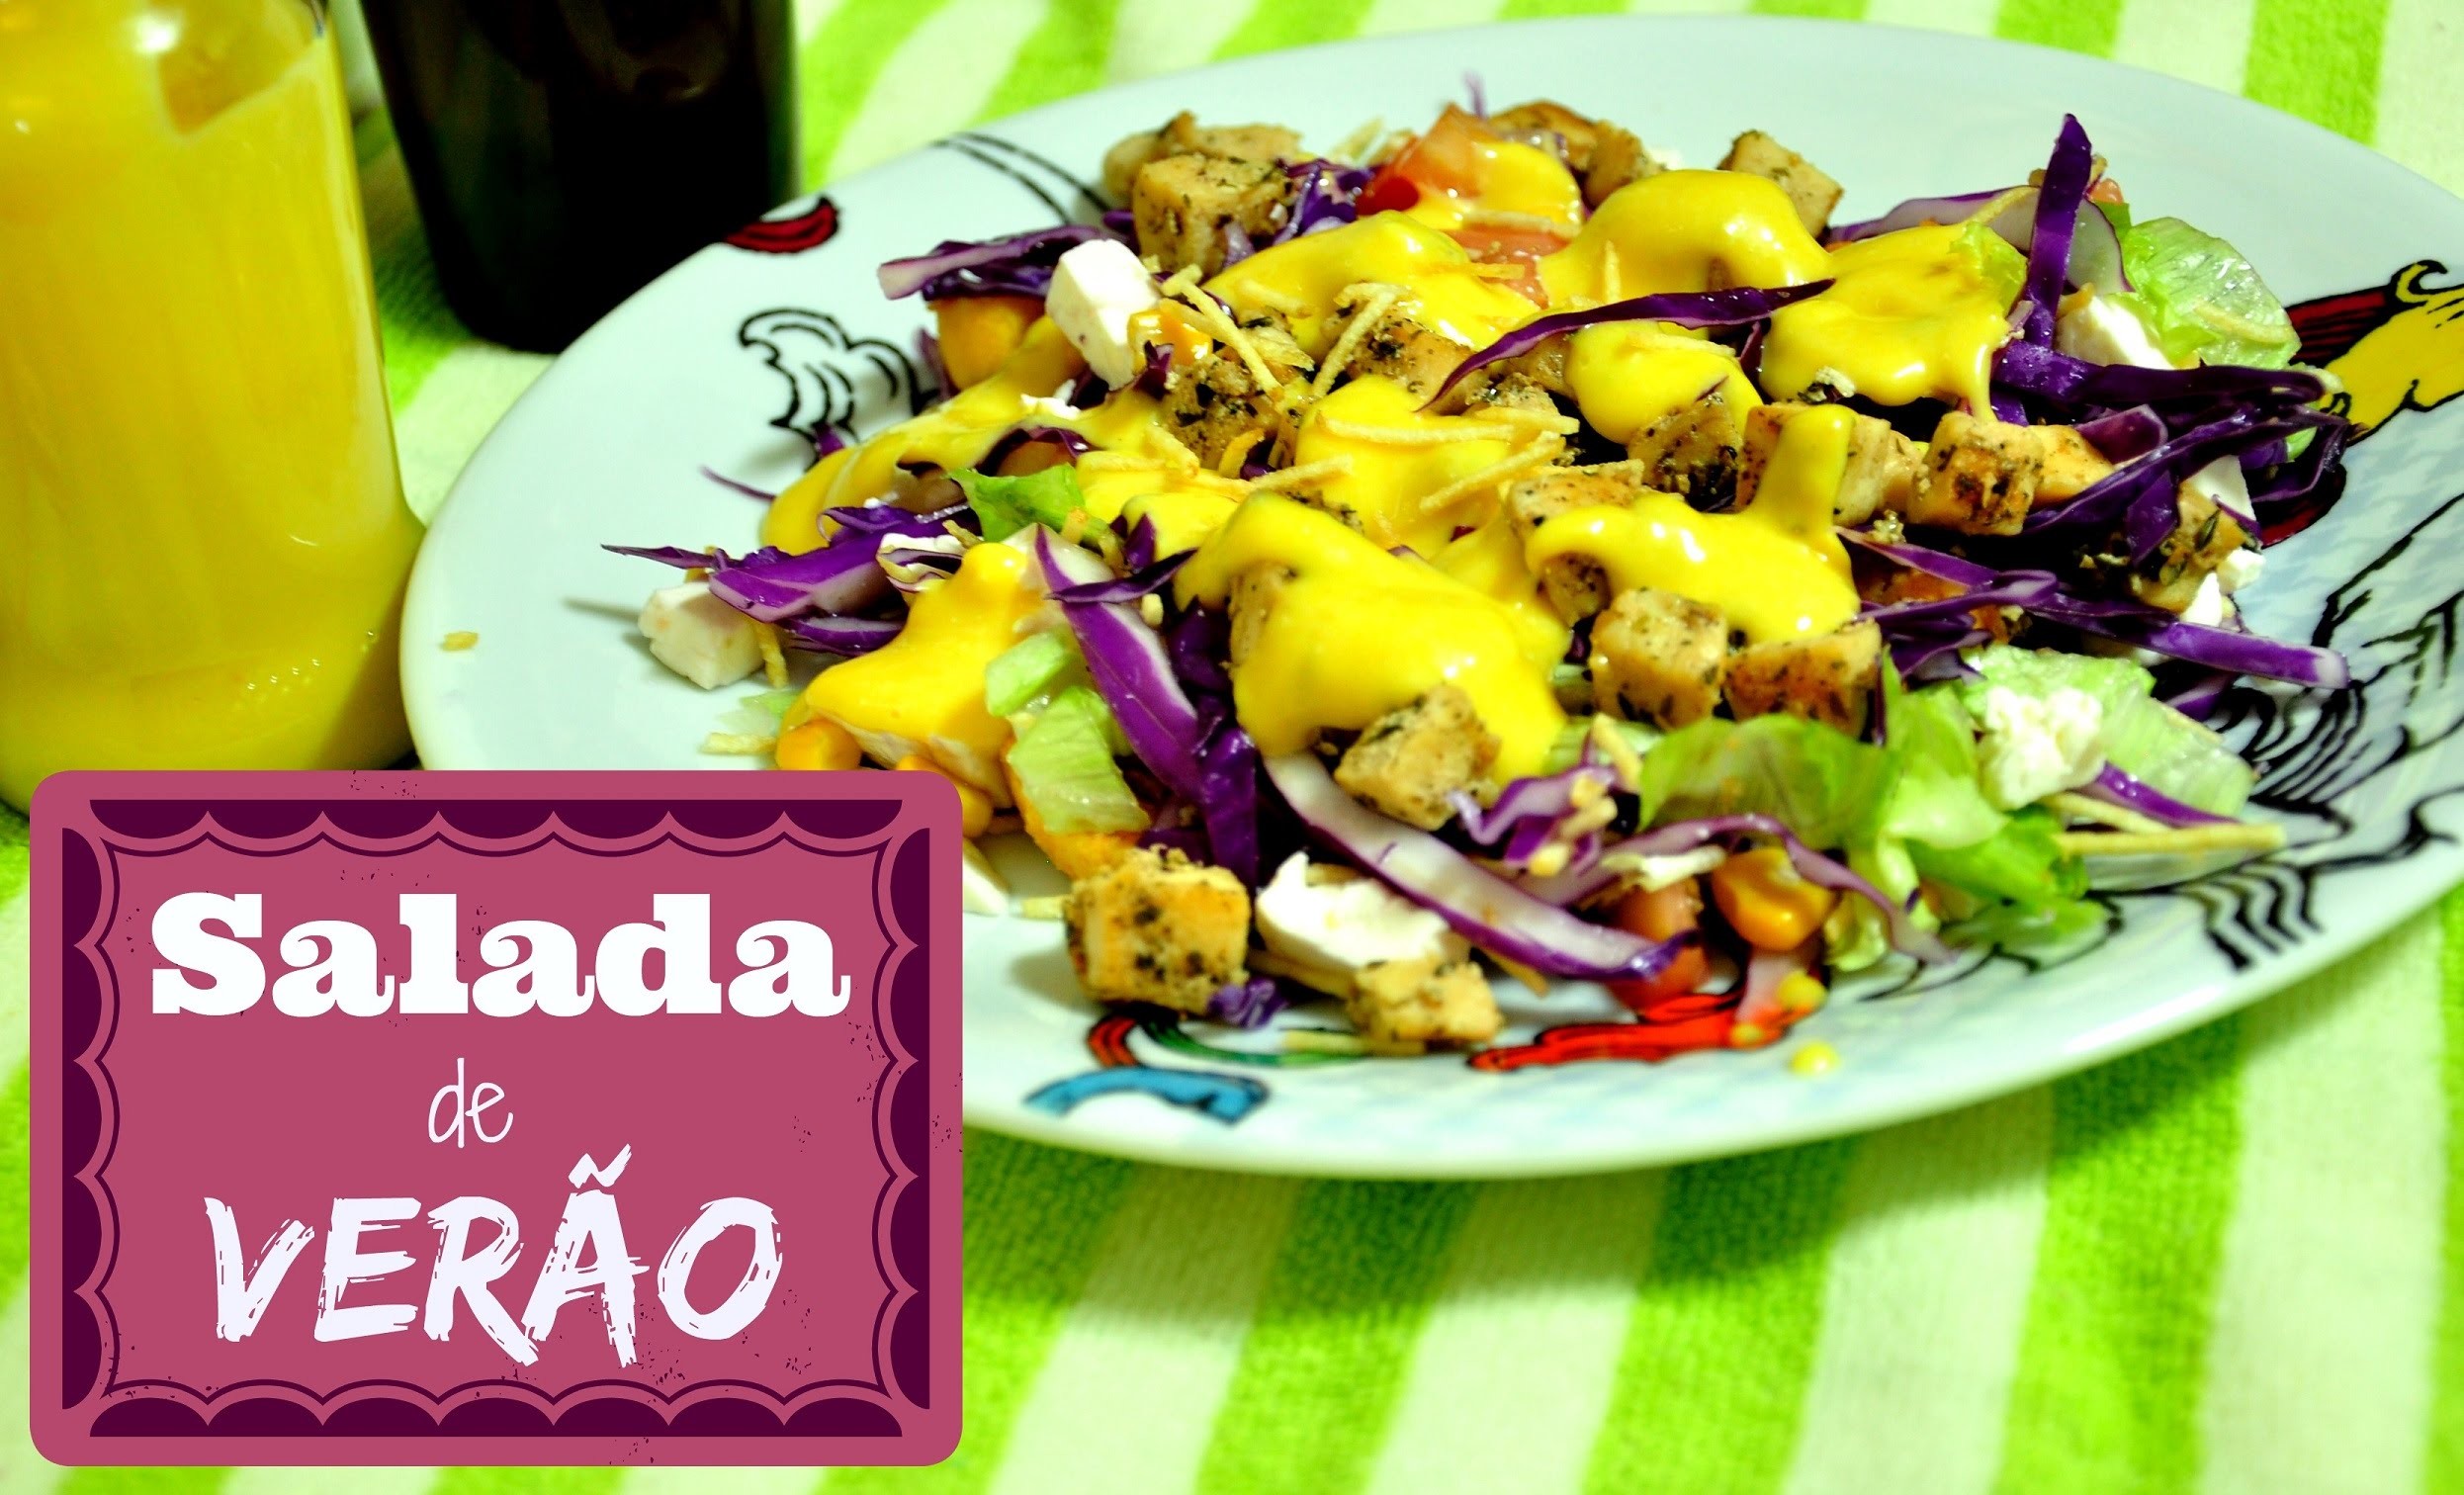 Salada de verão receita (summer salad) | Avental com Farinha #19